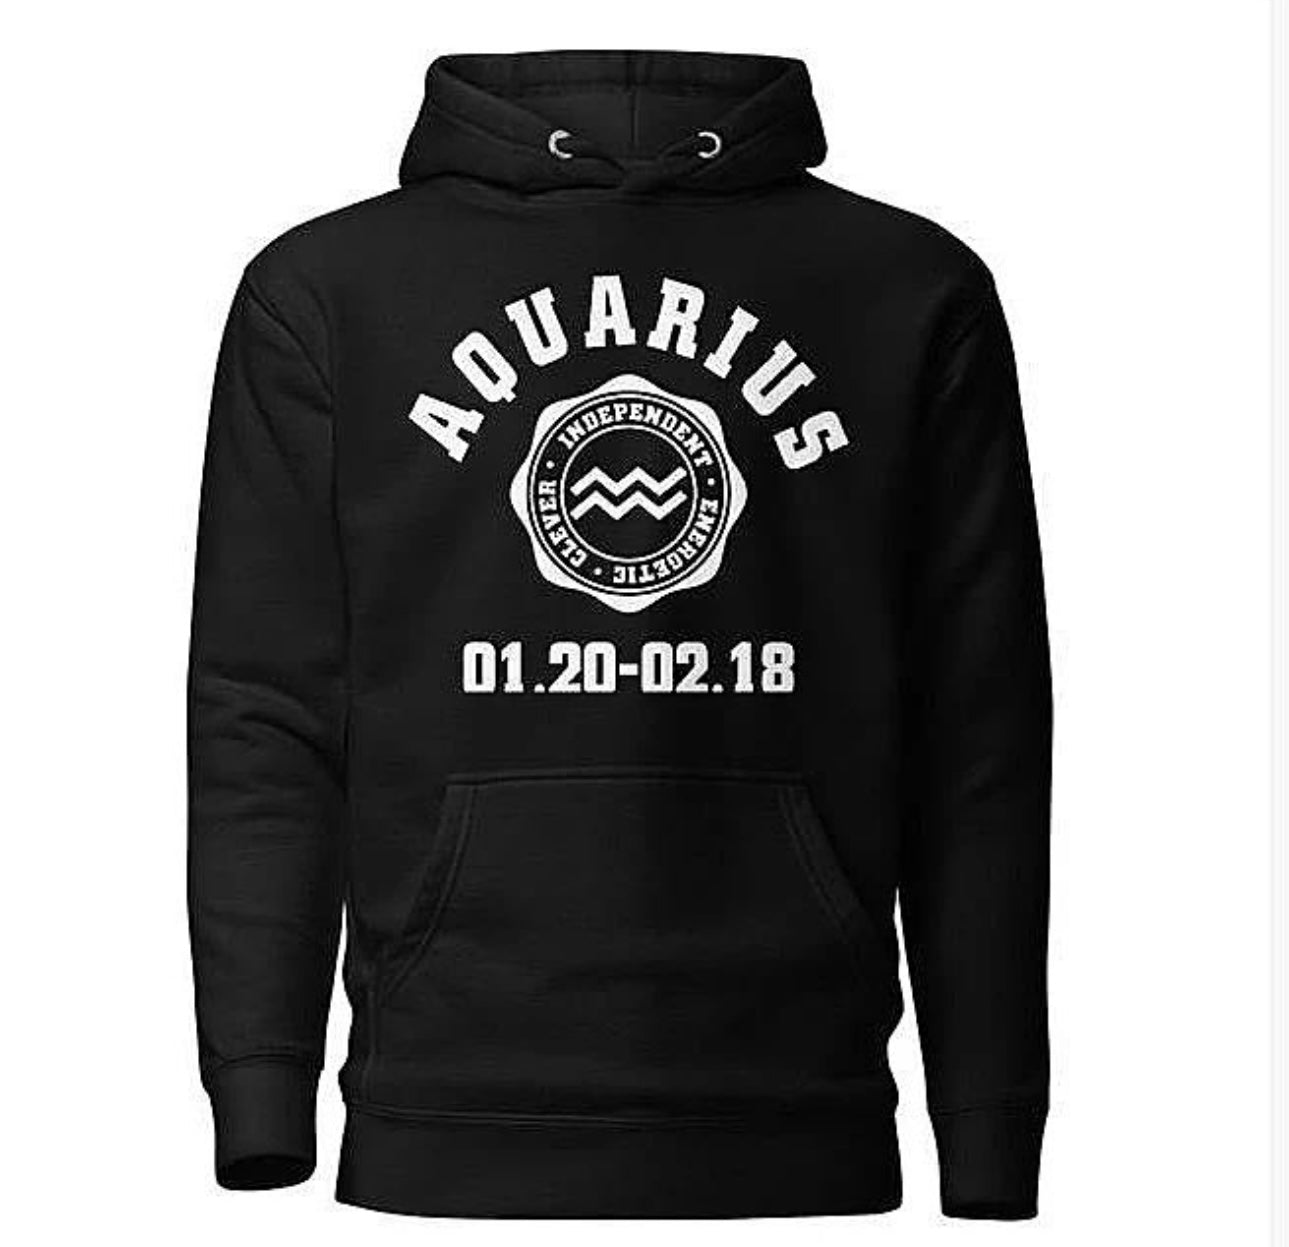 Aquarius hoodie